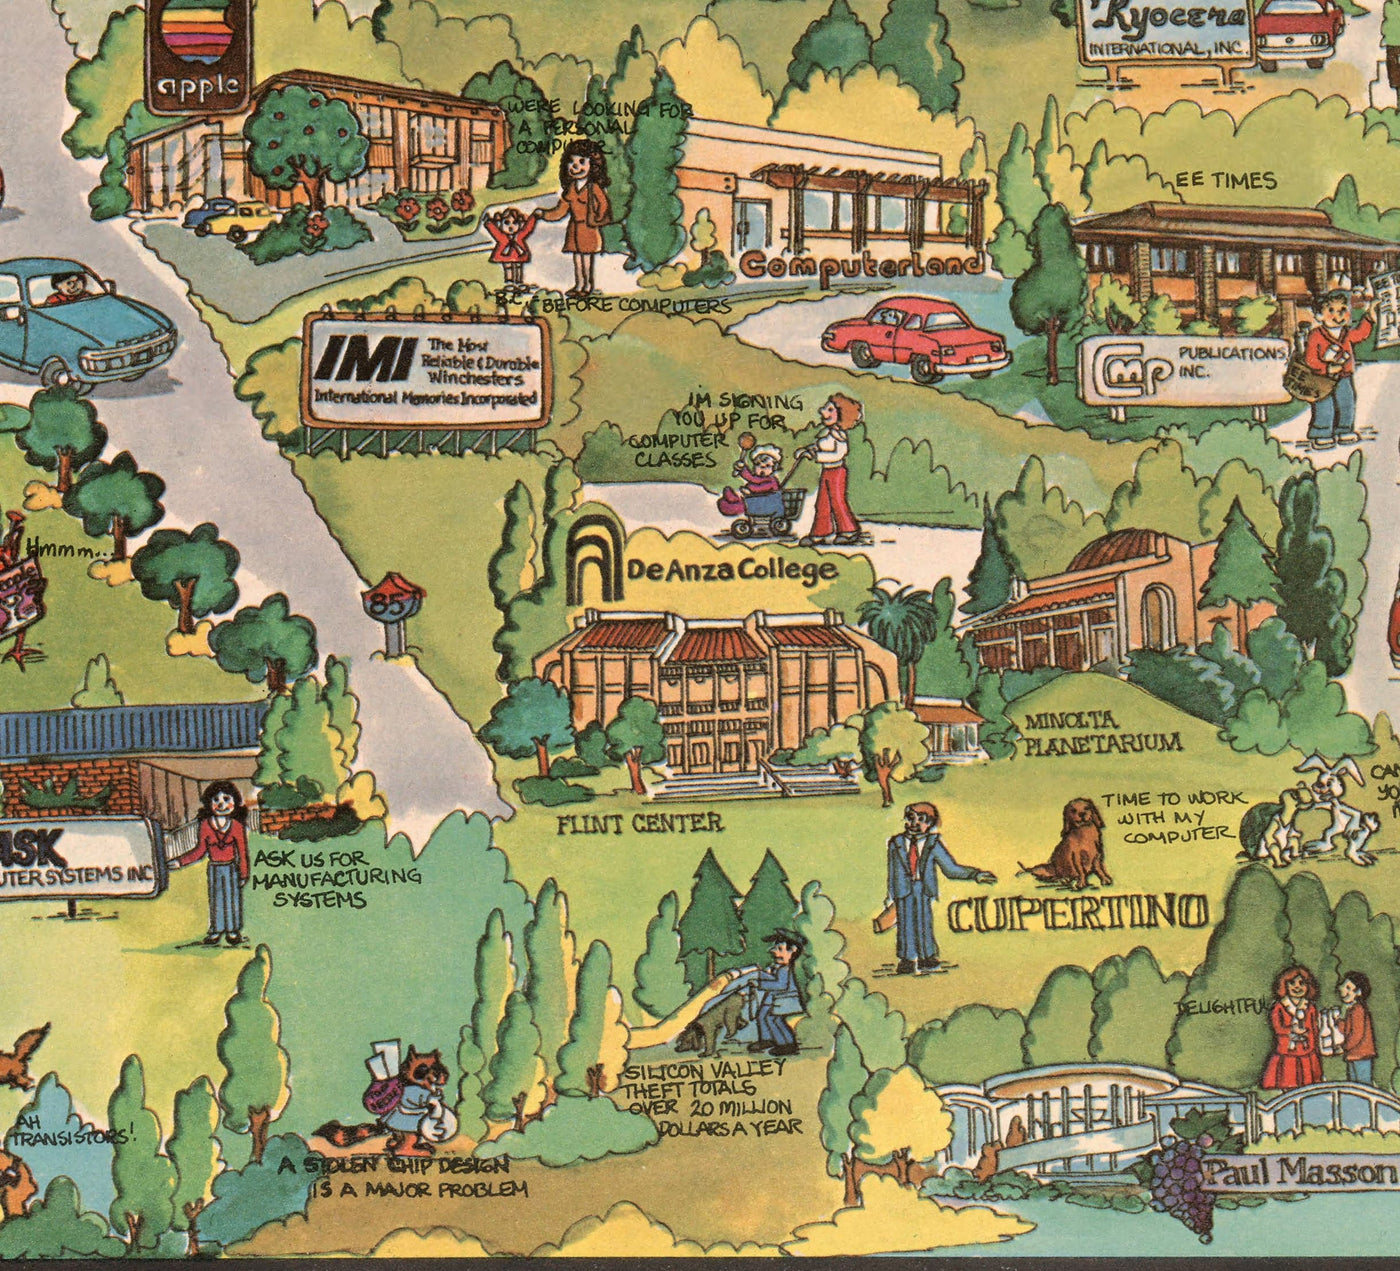 Alte Karte von Silicon Valley, 1982 - bildliches Diagramm der Bergsicht, Sunnyvale, Cupertino, San Jose, Fremont